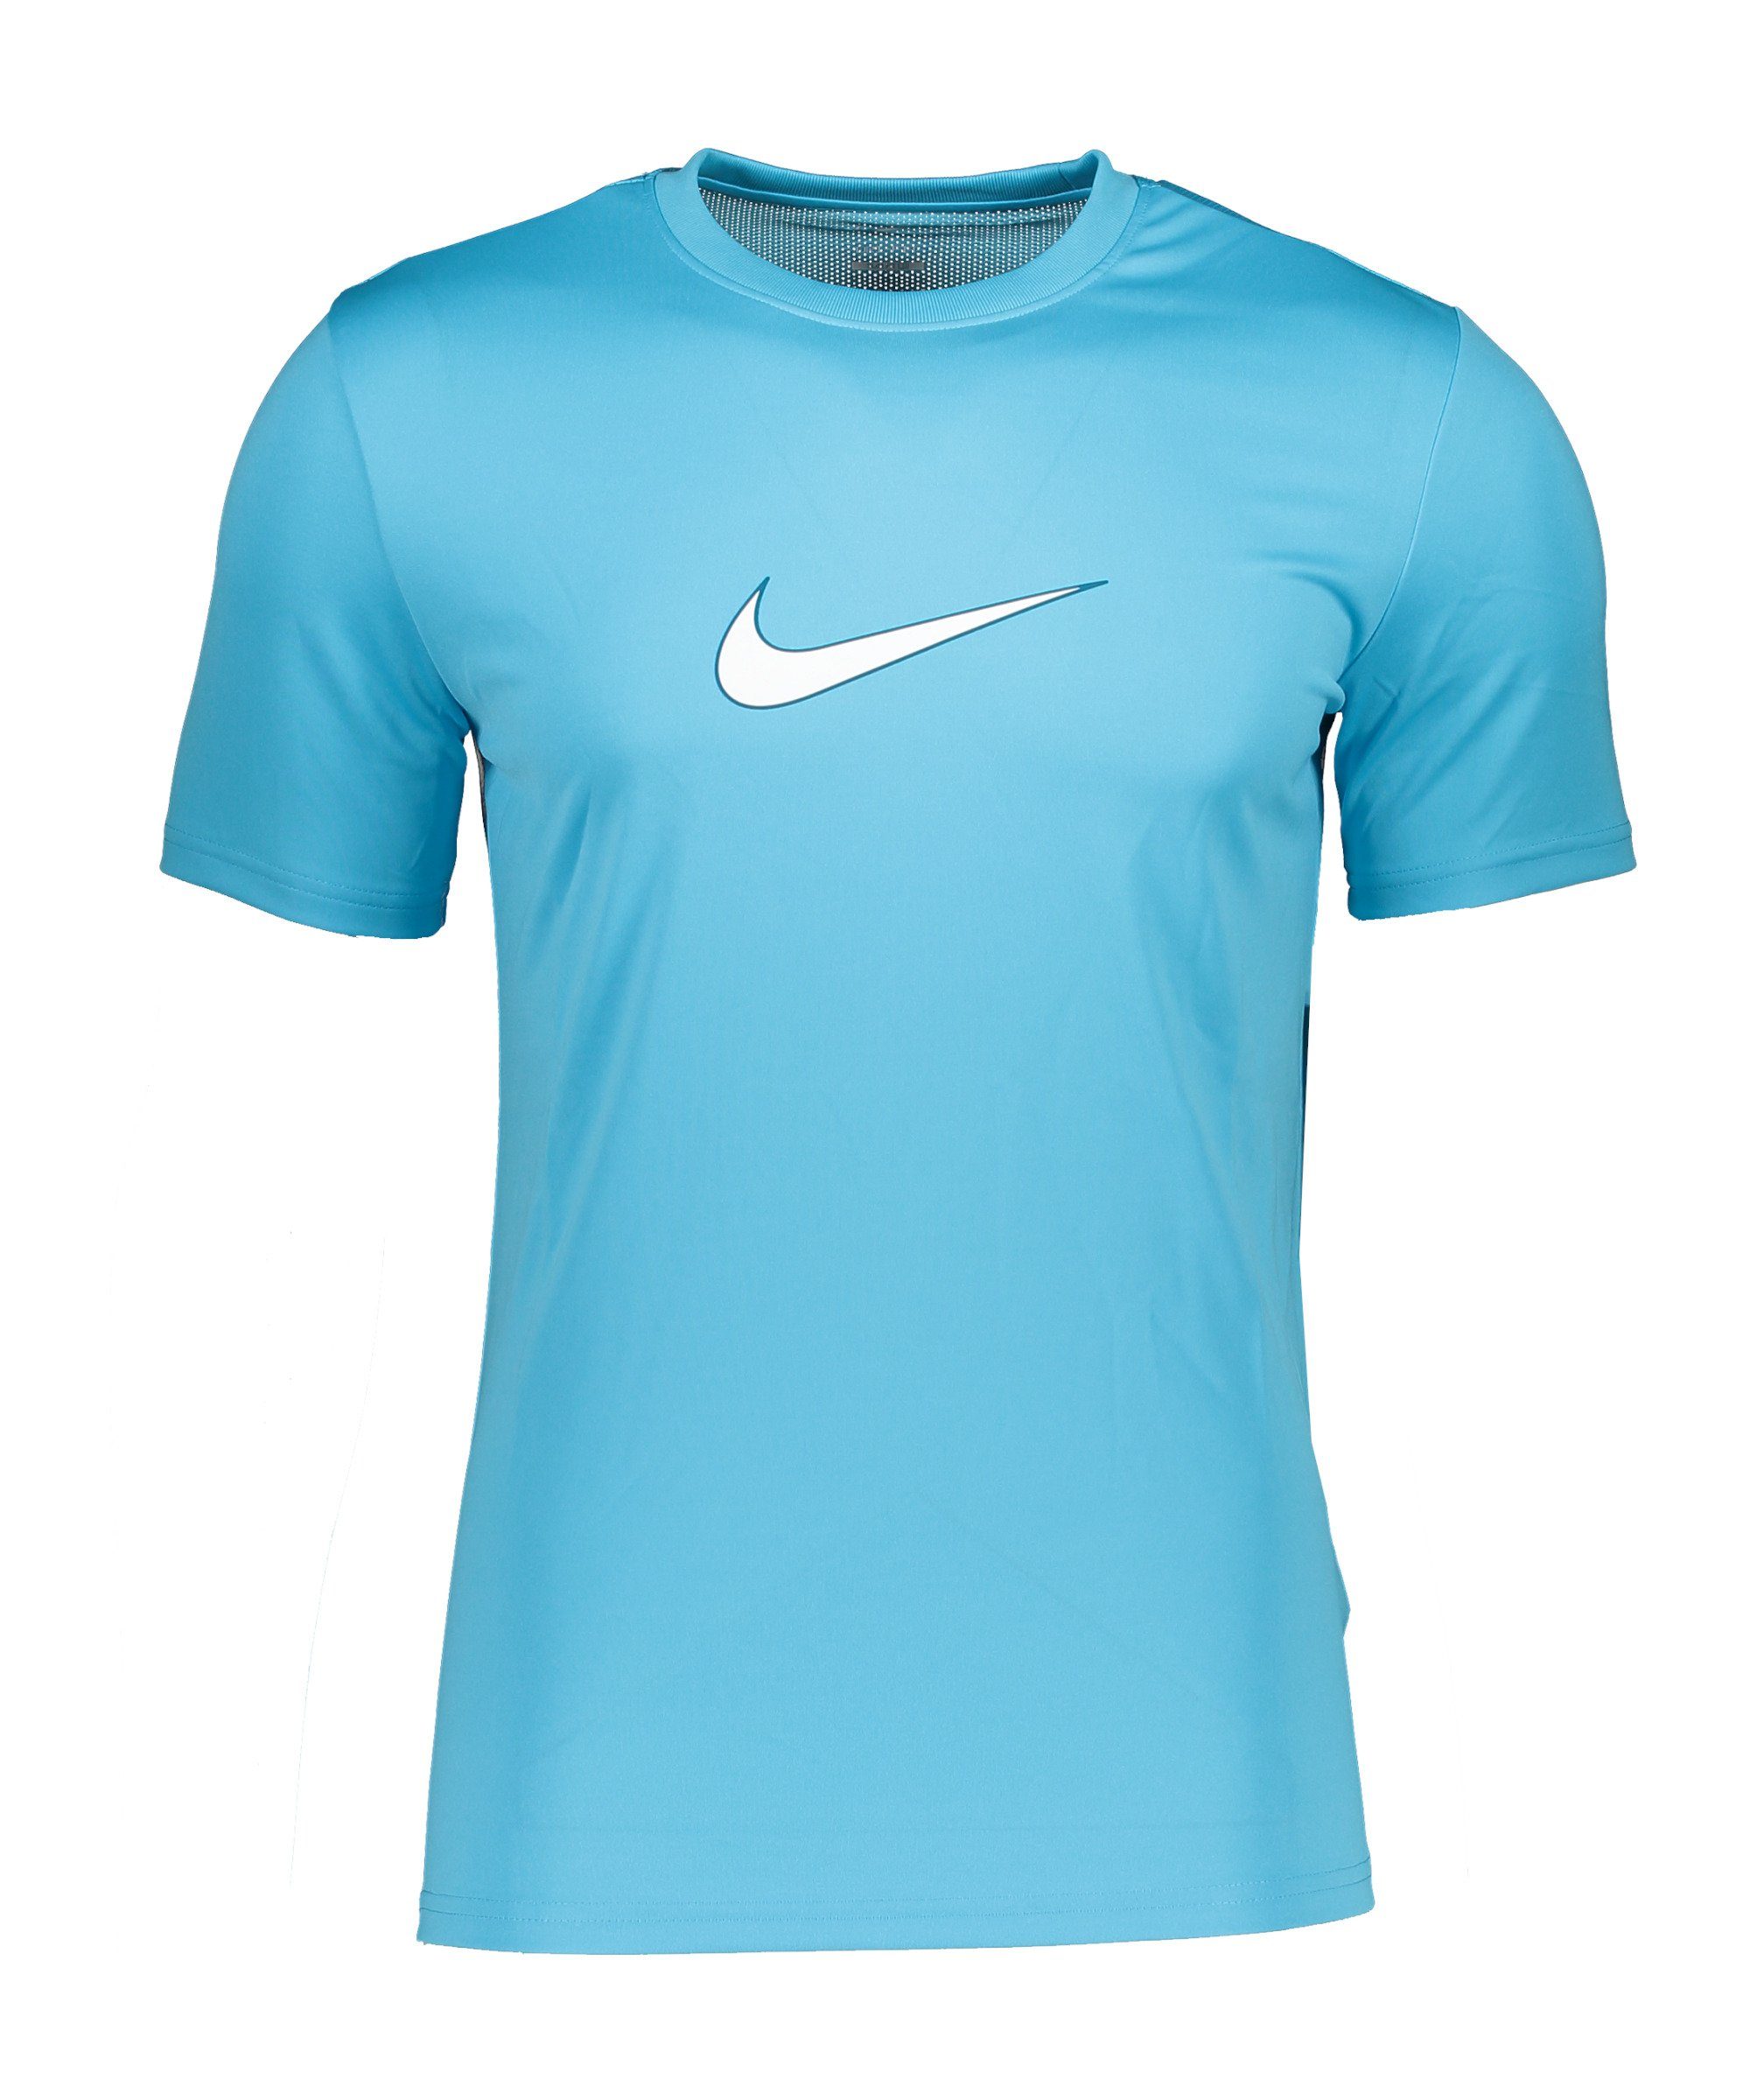 Nike T-Shirt Graphic T-Shirt default blaublau